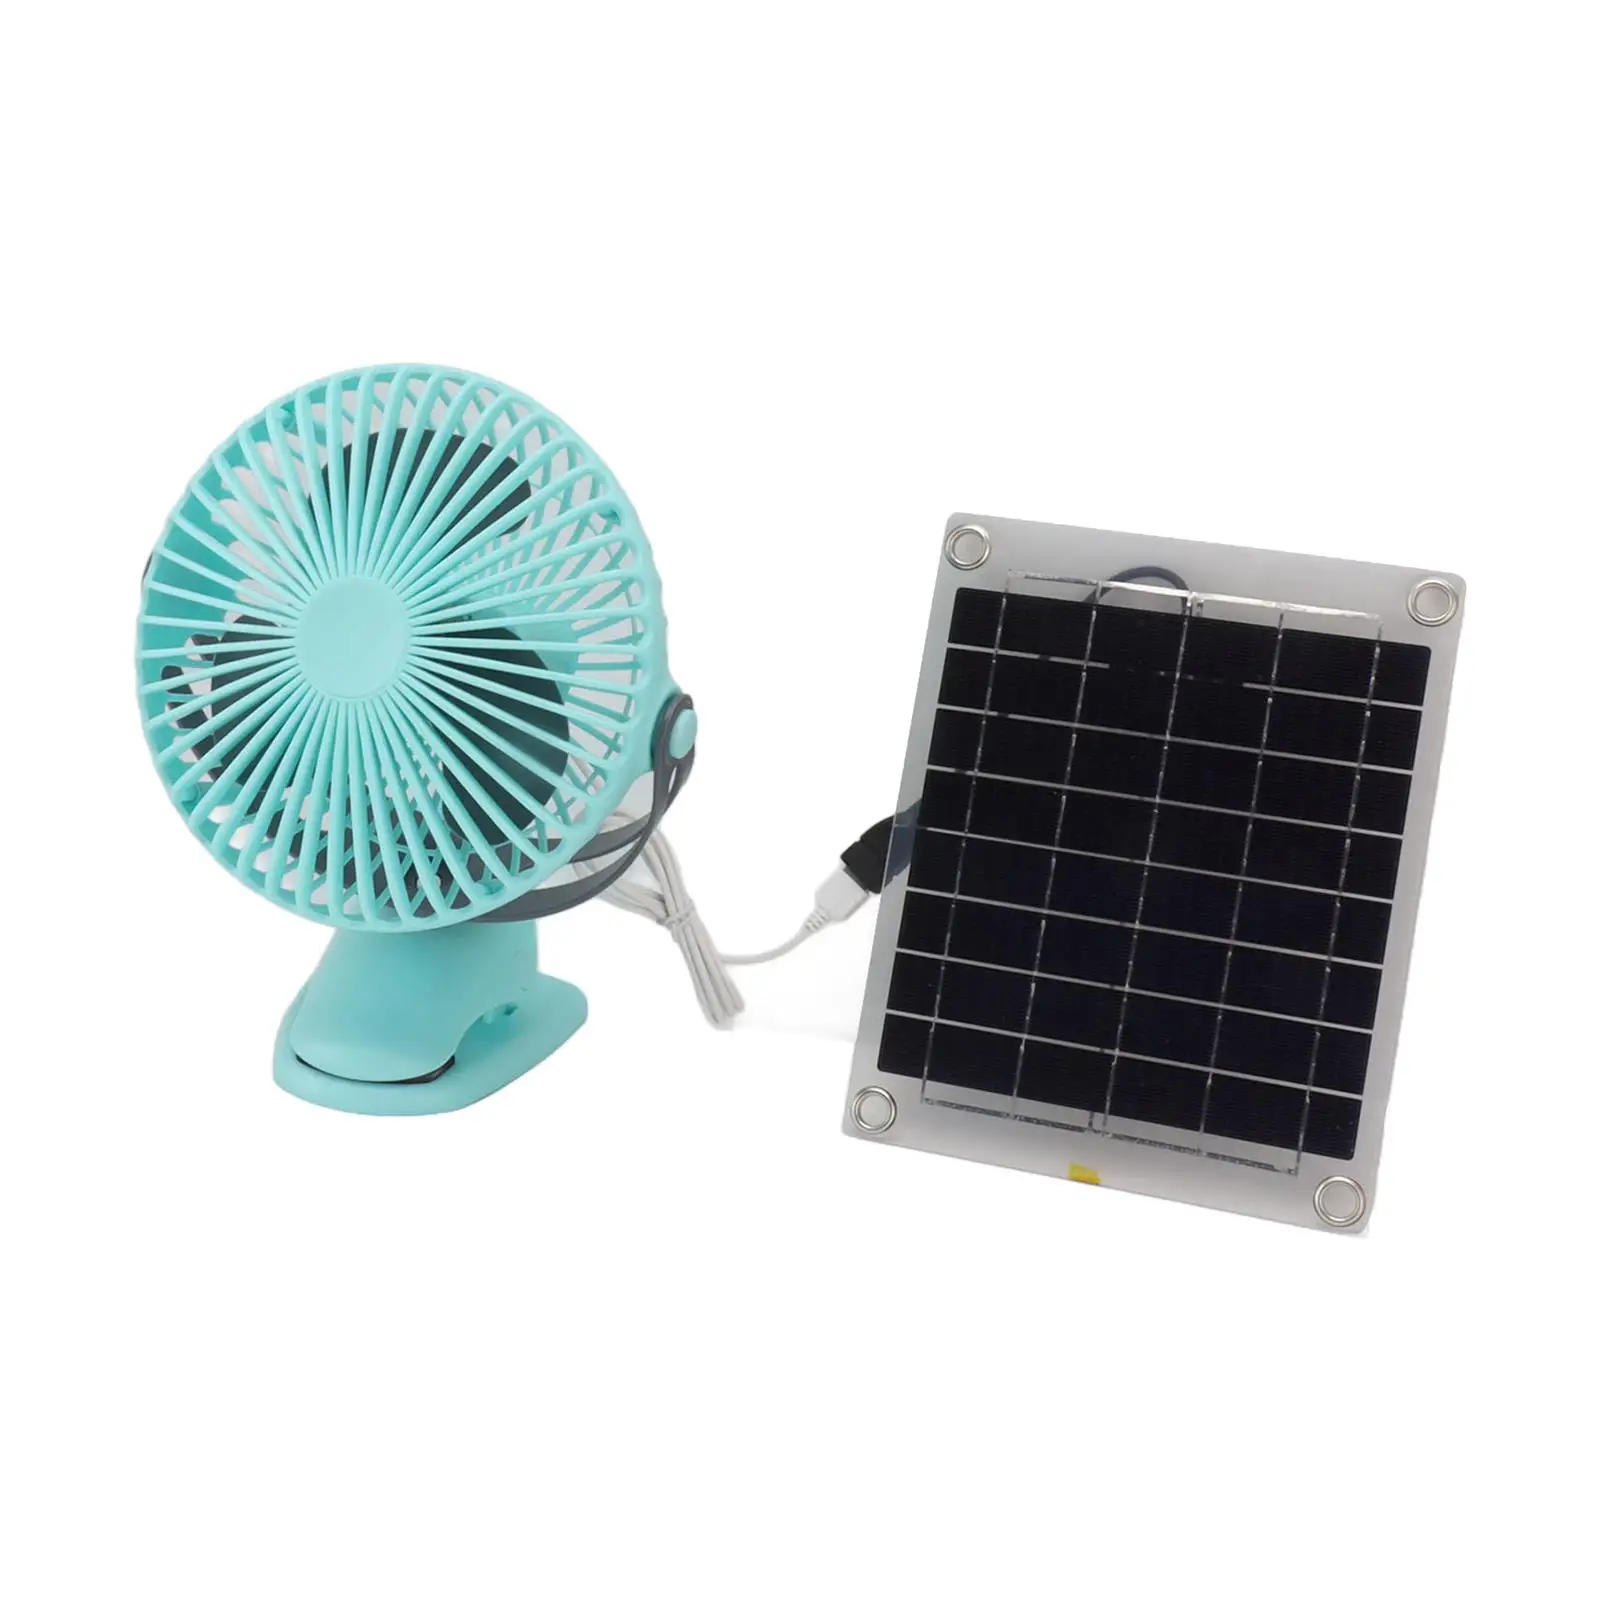 Clip on Fan Camping Fan with Solar Panel Portable Solar Powered Fan Personal Desk Fan for Tent Dorm Outside Fishing Household